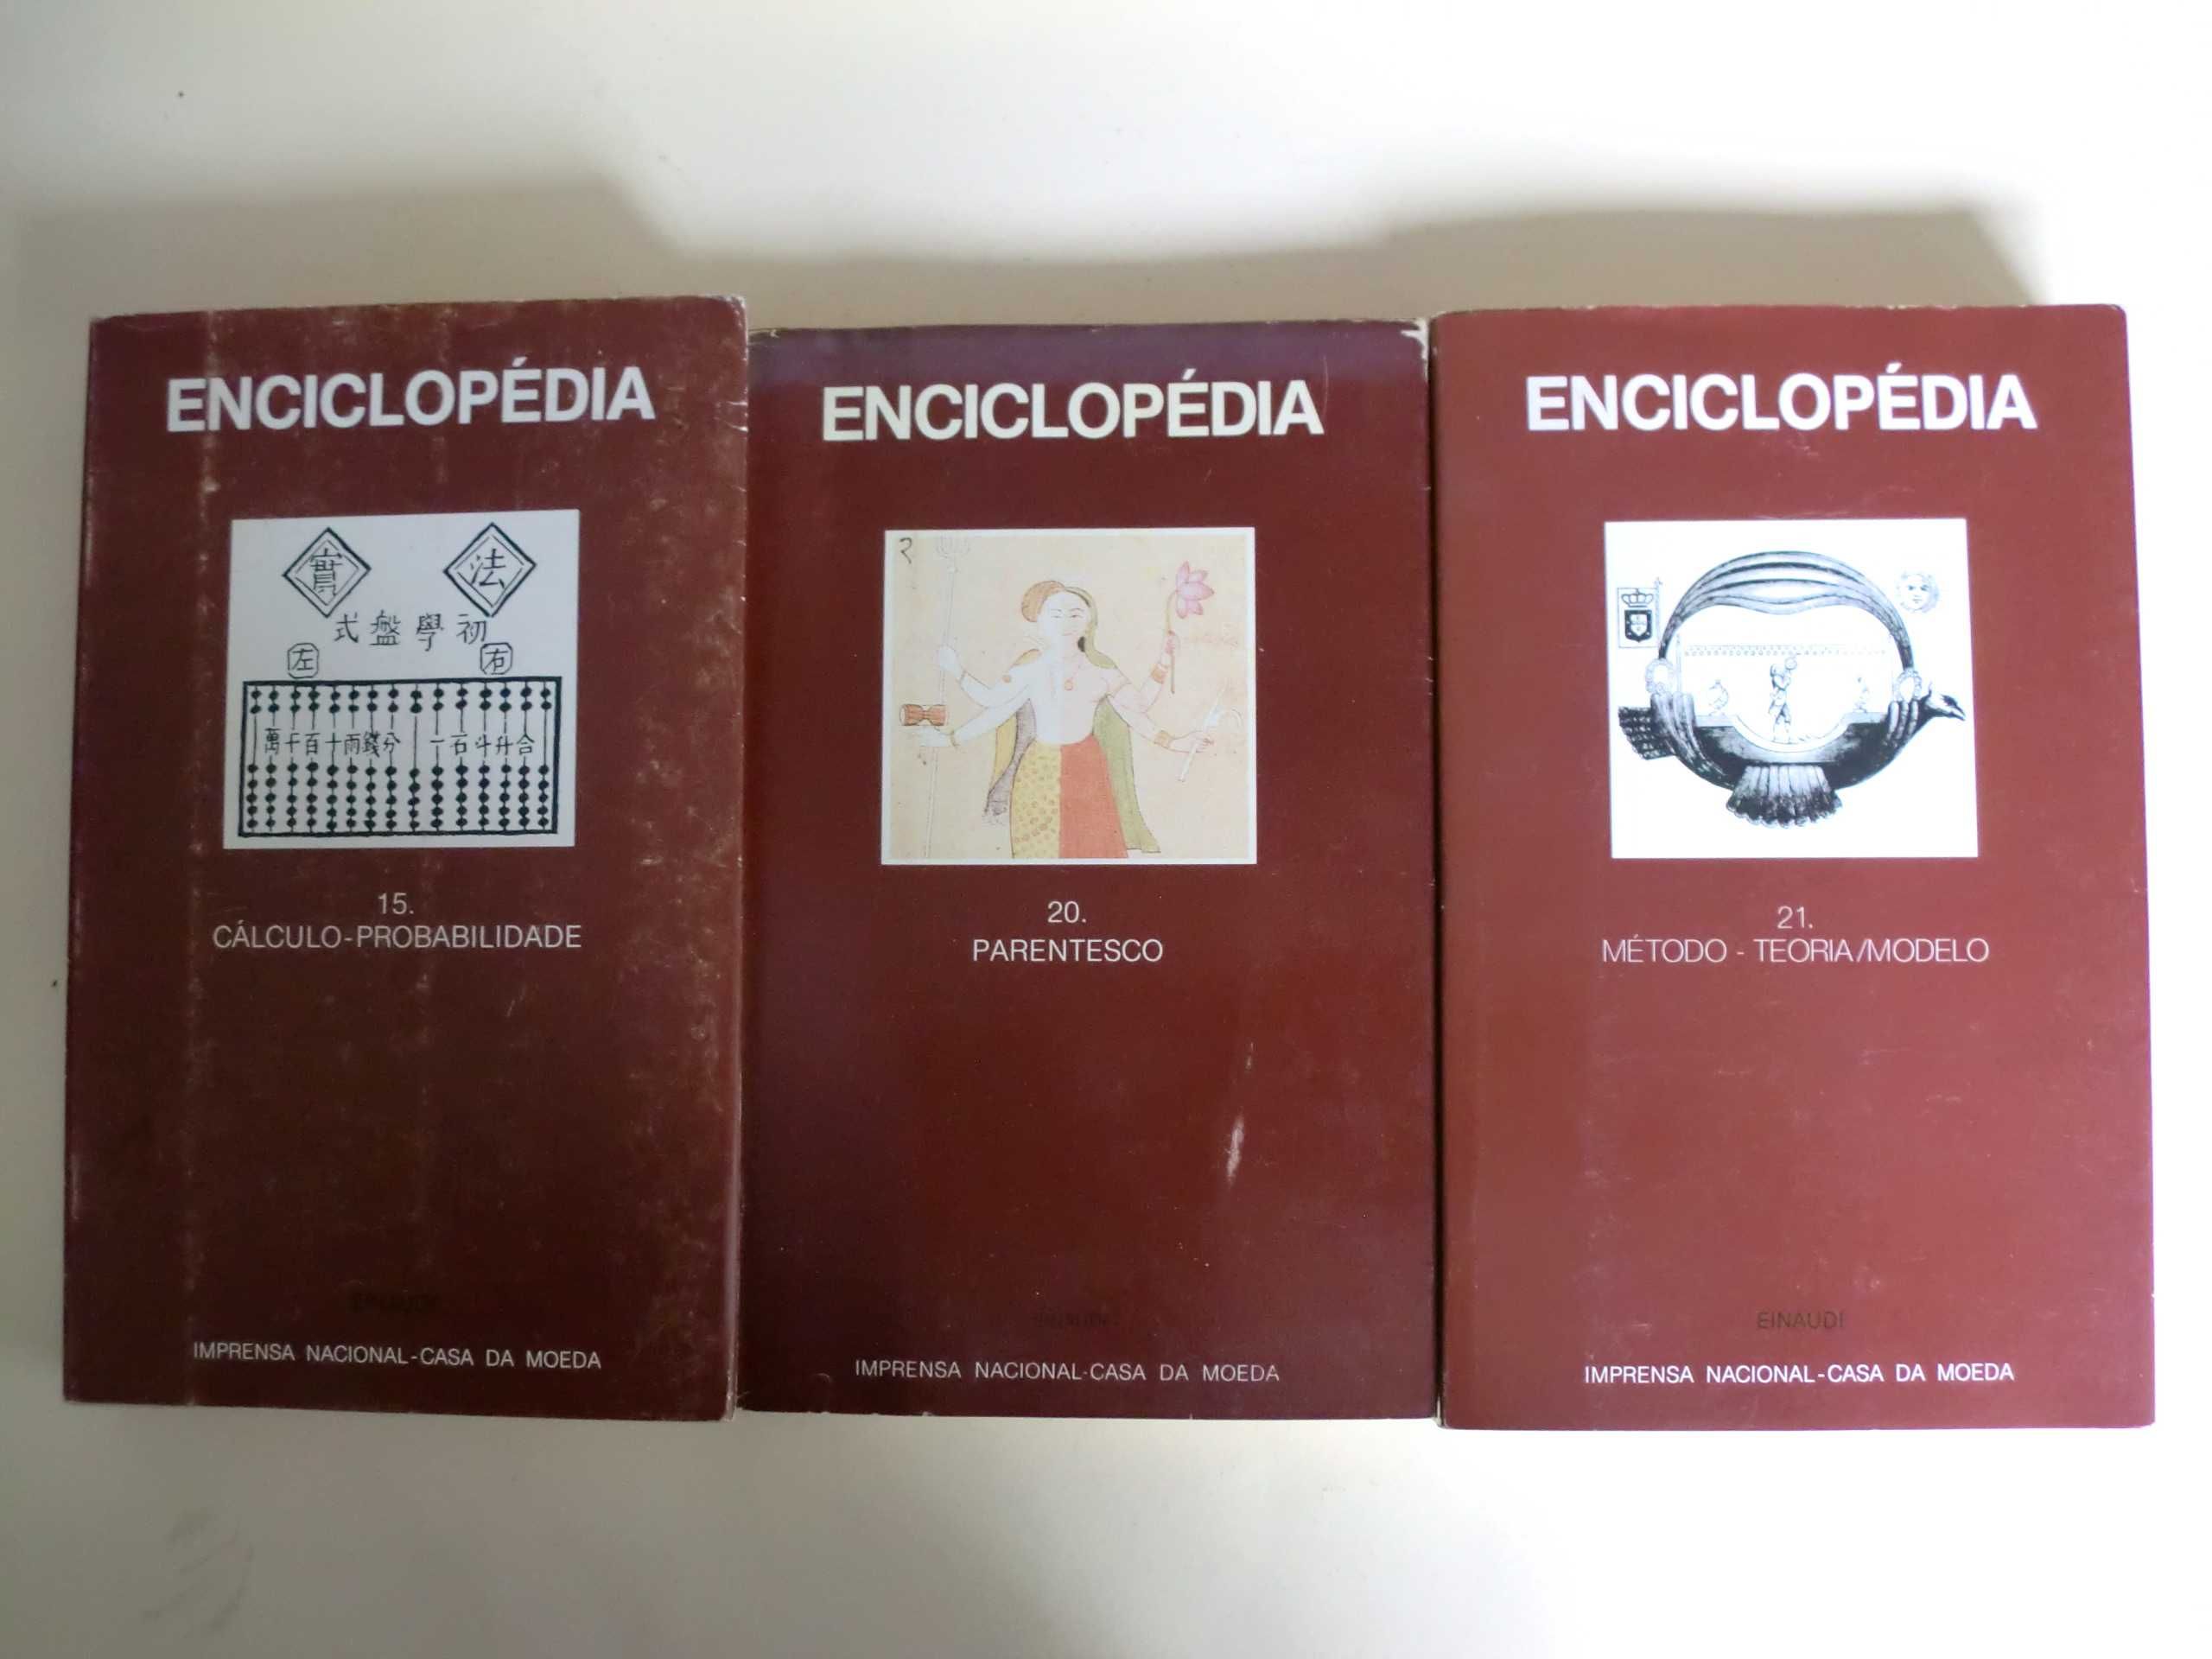 Enciclopédia Einaudi / Imprensa Nacional - Casa da Moeda